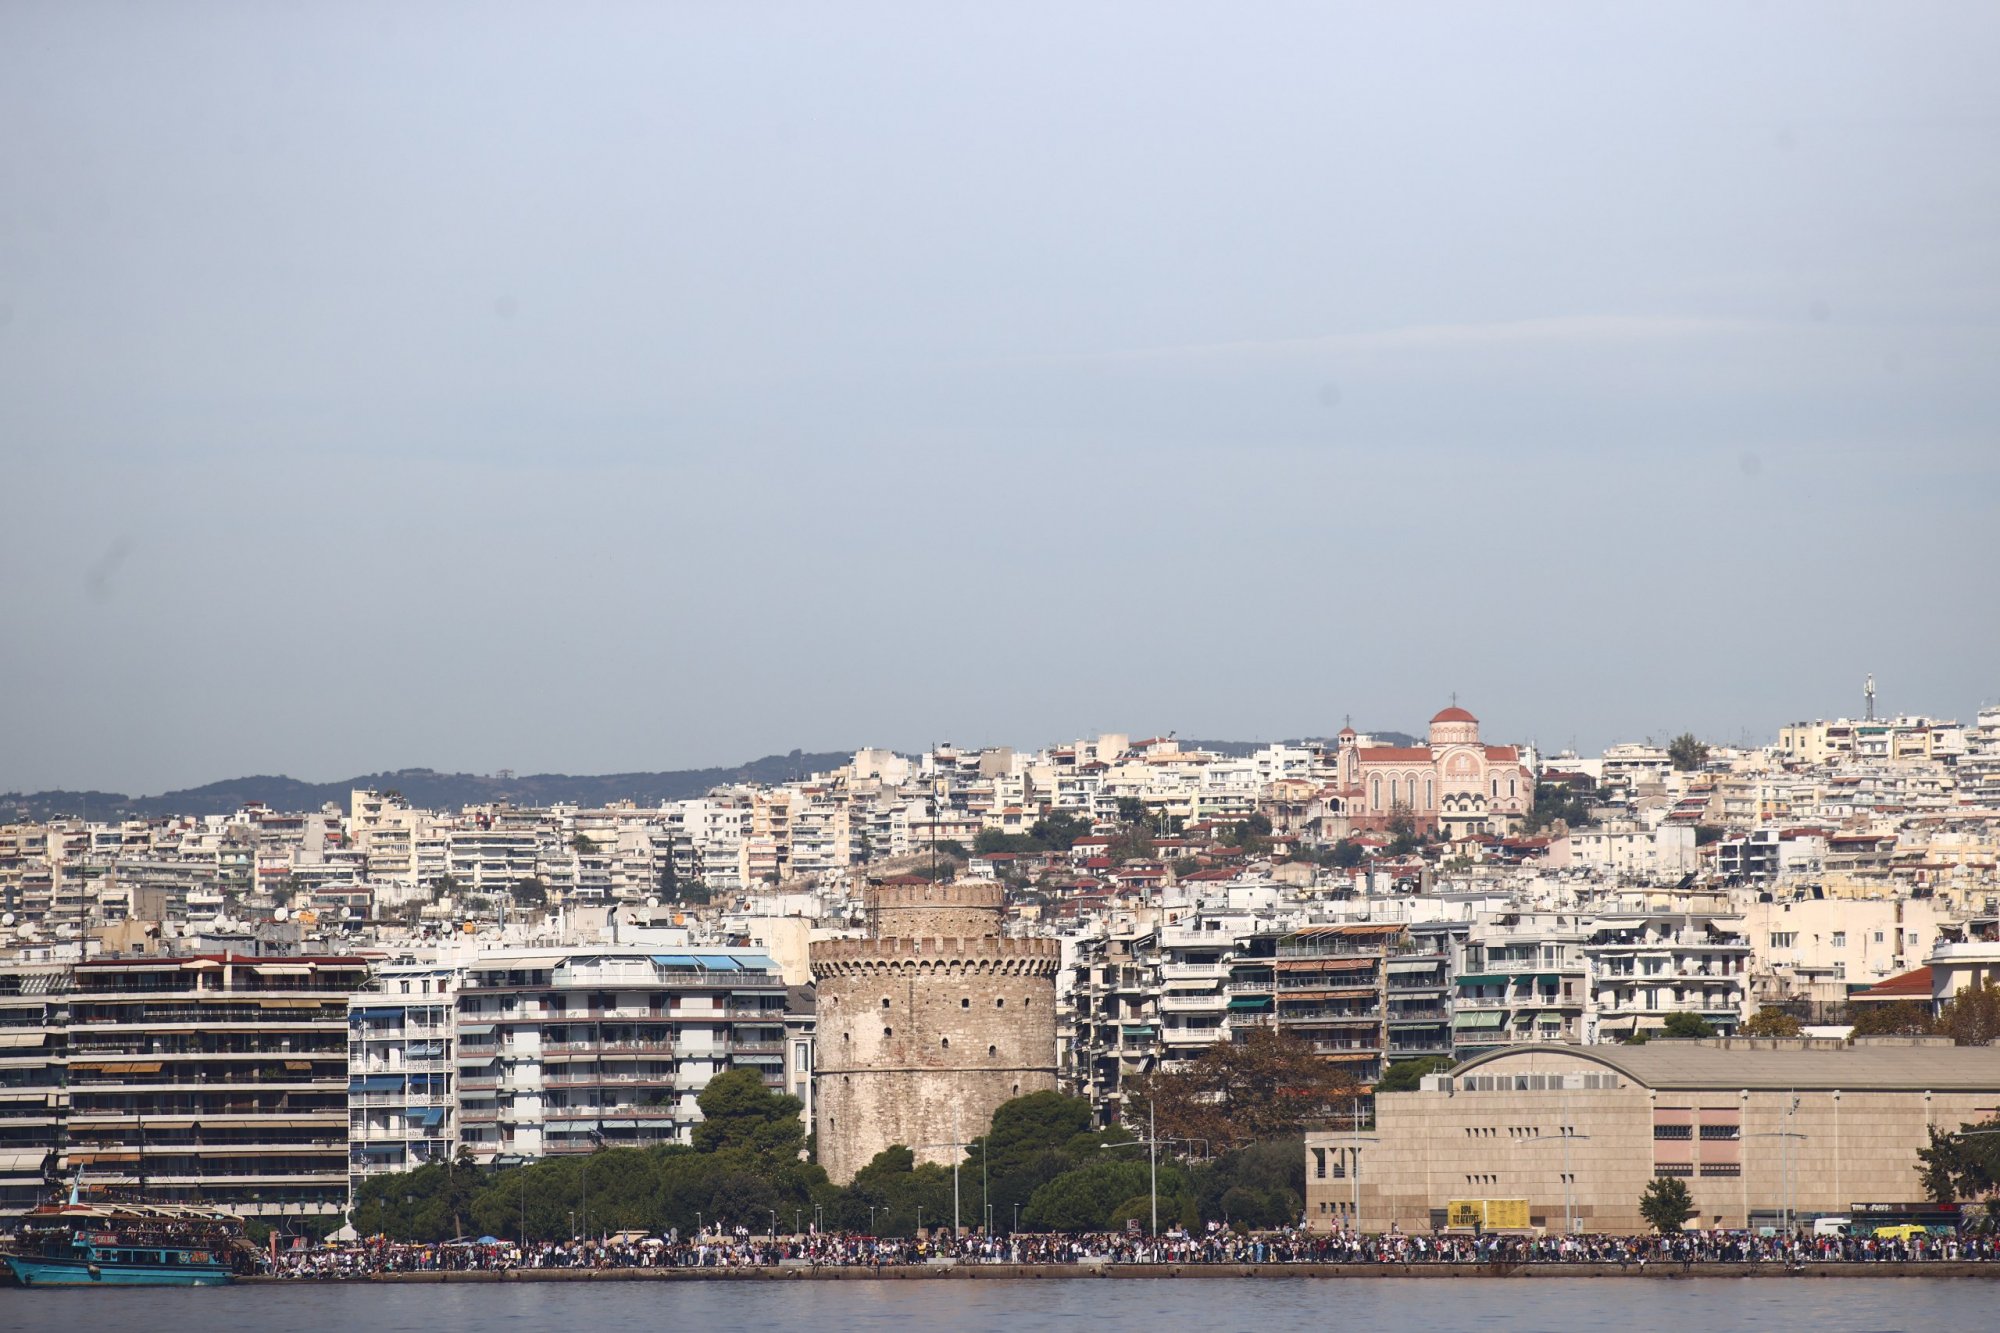 Ακίνητα: Κορυφαίες αποδόσεις για επενδυτές στην αγορά της Θεσσαλονίκης